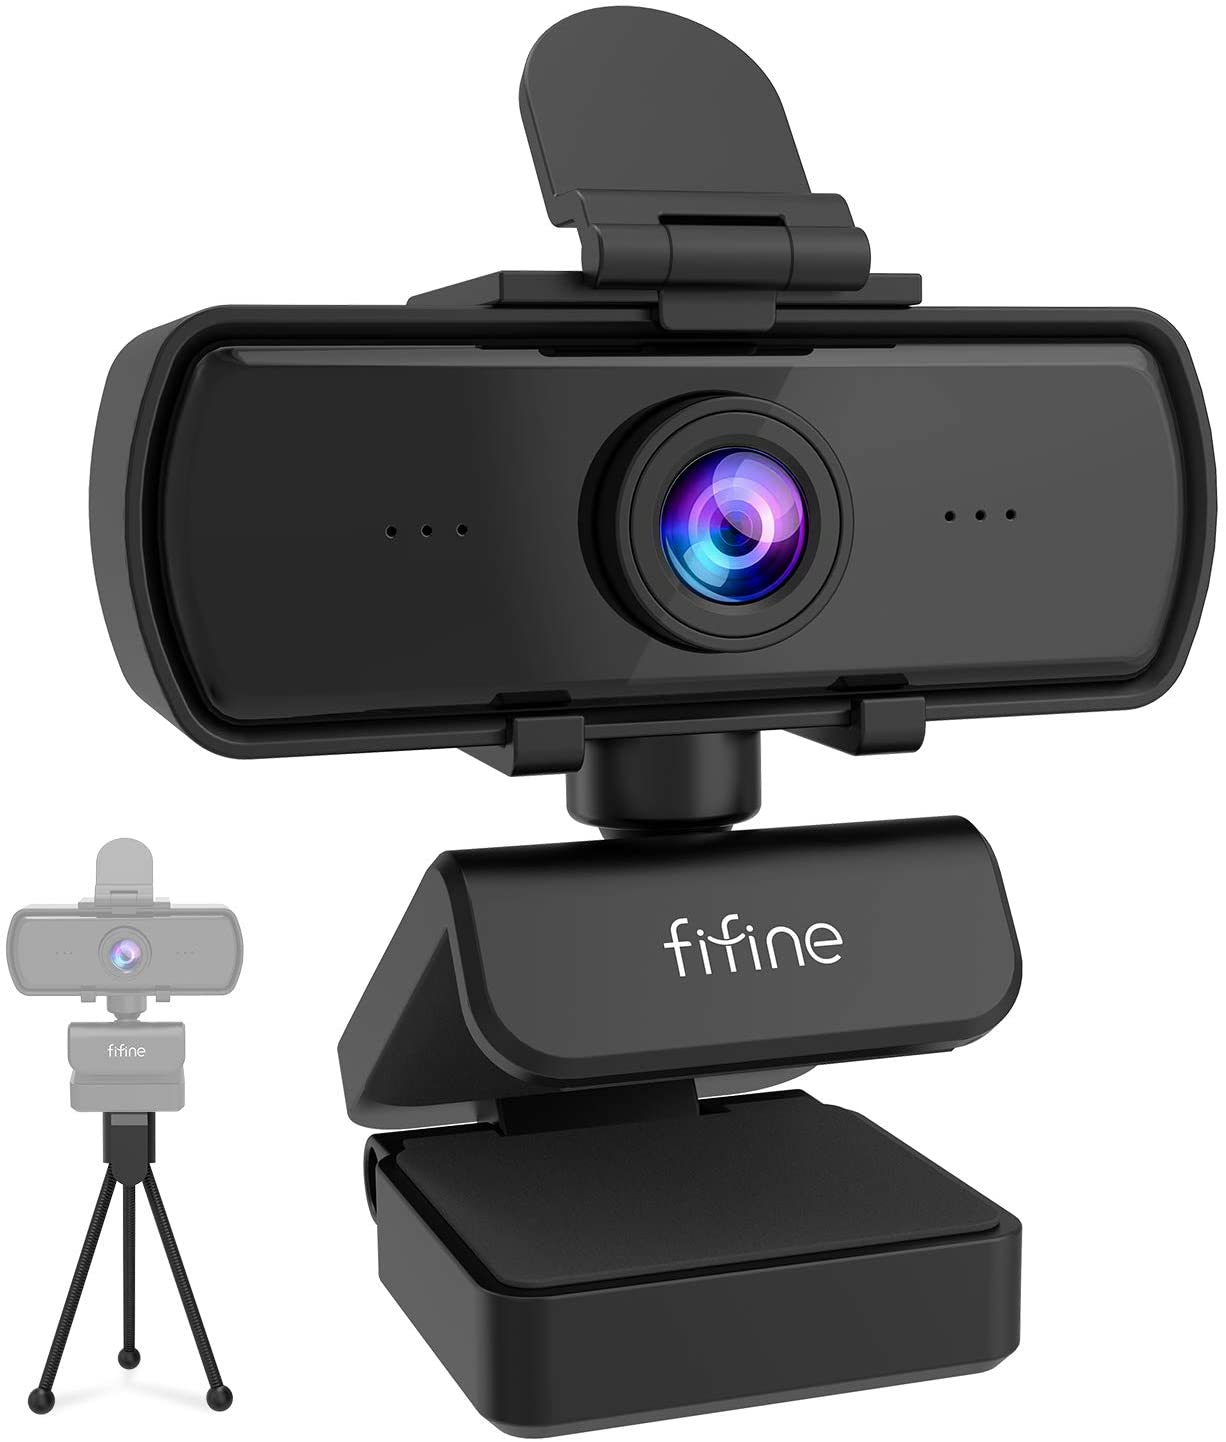 Fifine 1440P Webcam